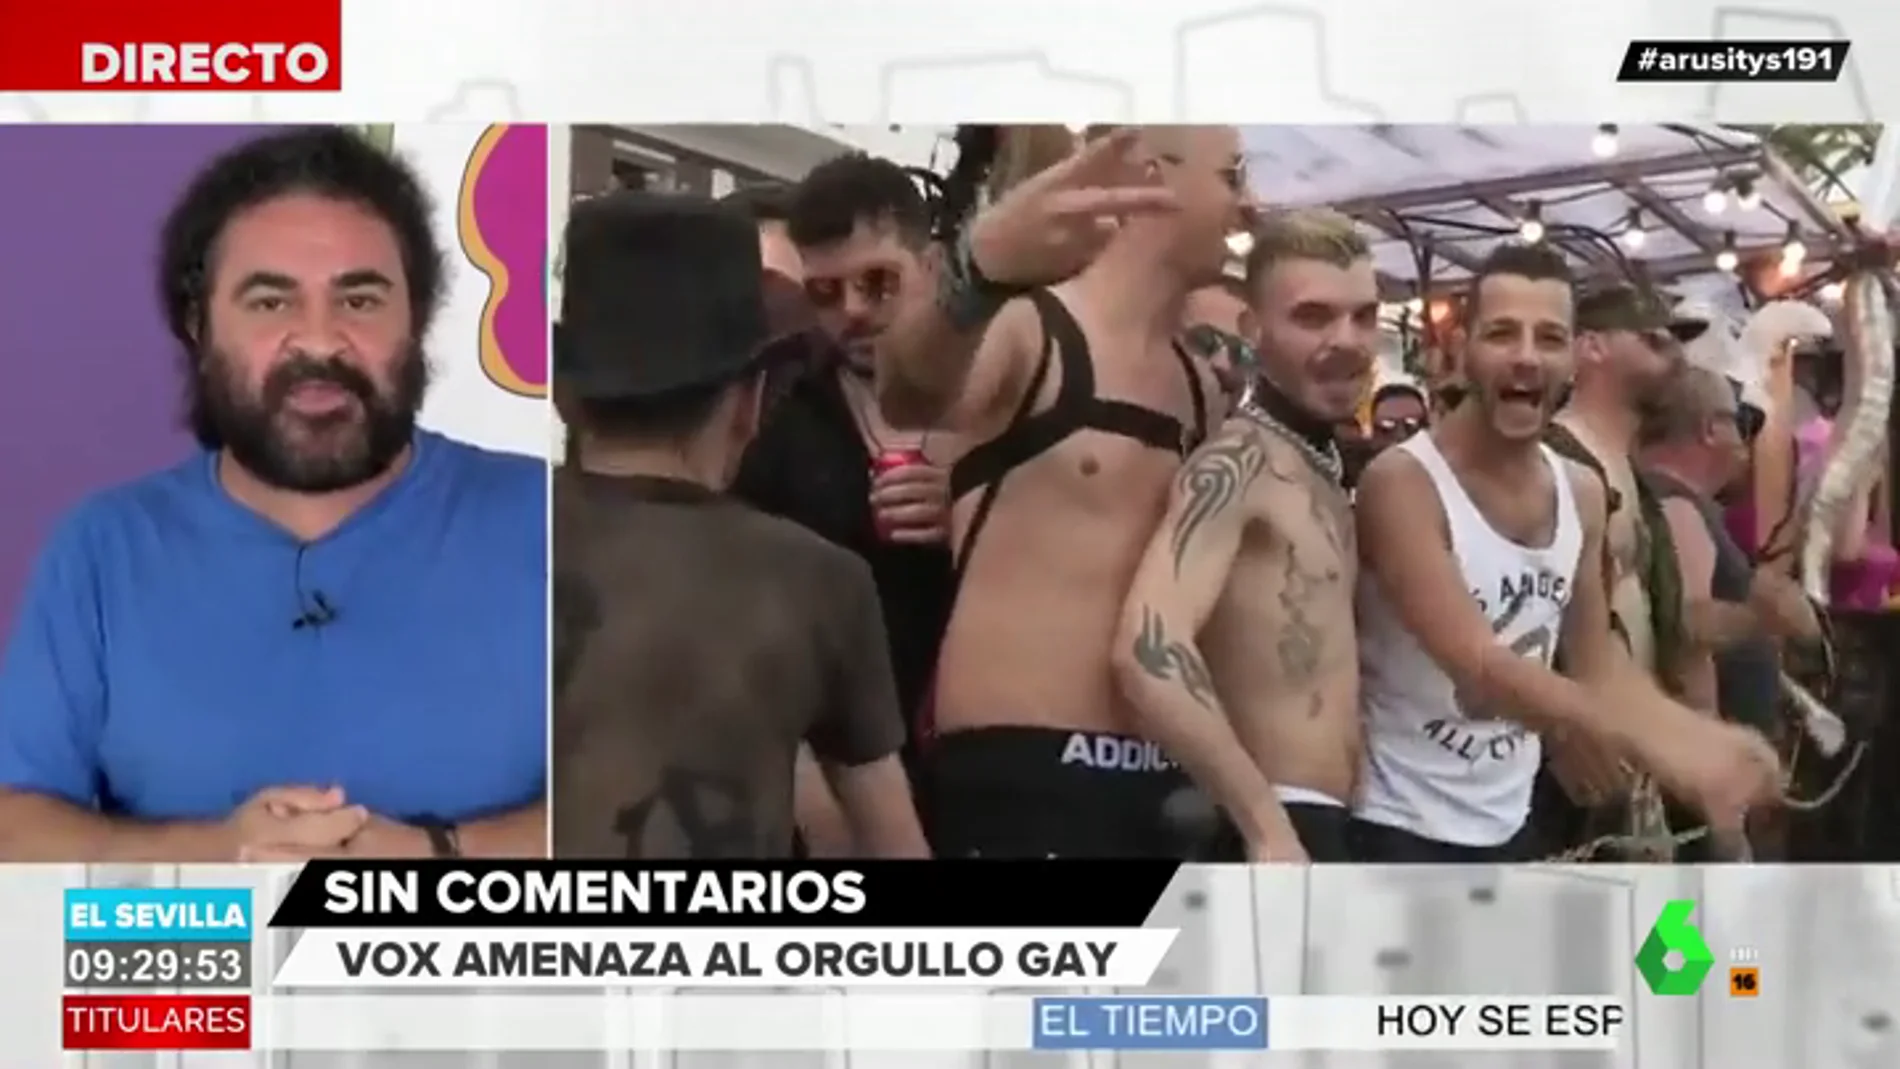 La tajante respuesta de El Sevilla a la amenaza de Vox al Orgullo Gay